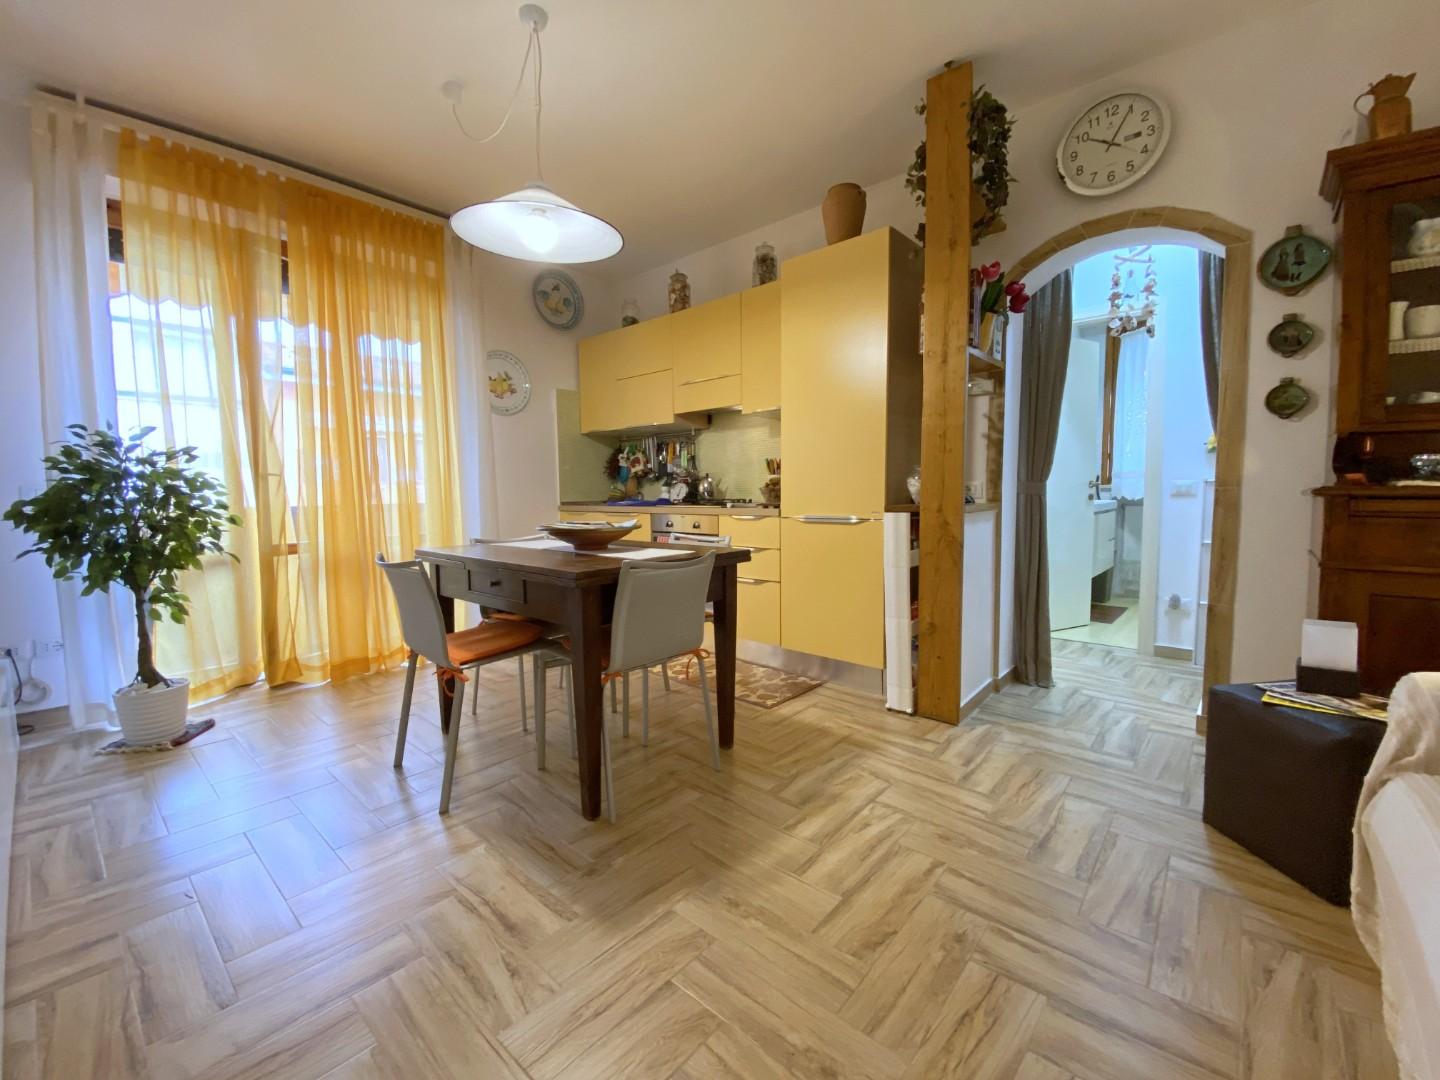 Apartment for sale in Viareggio (LU)